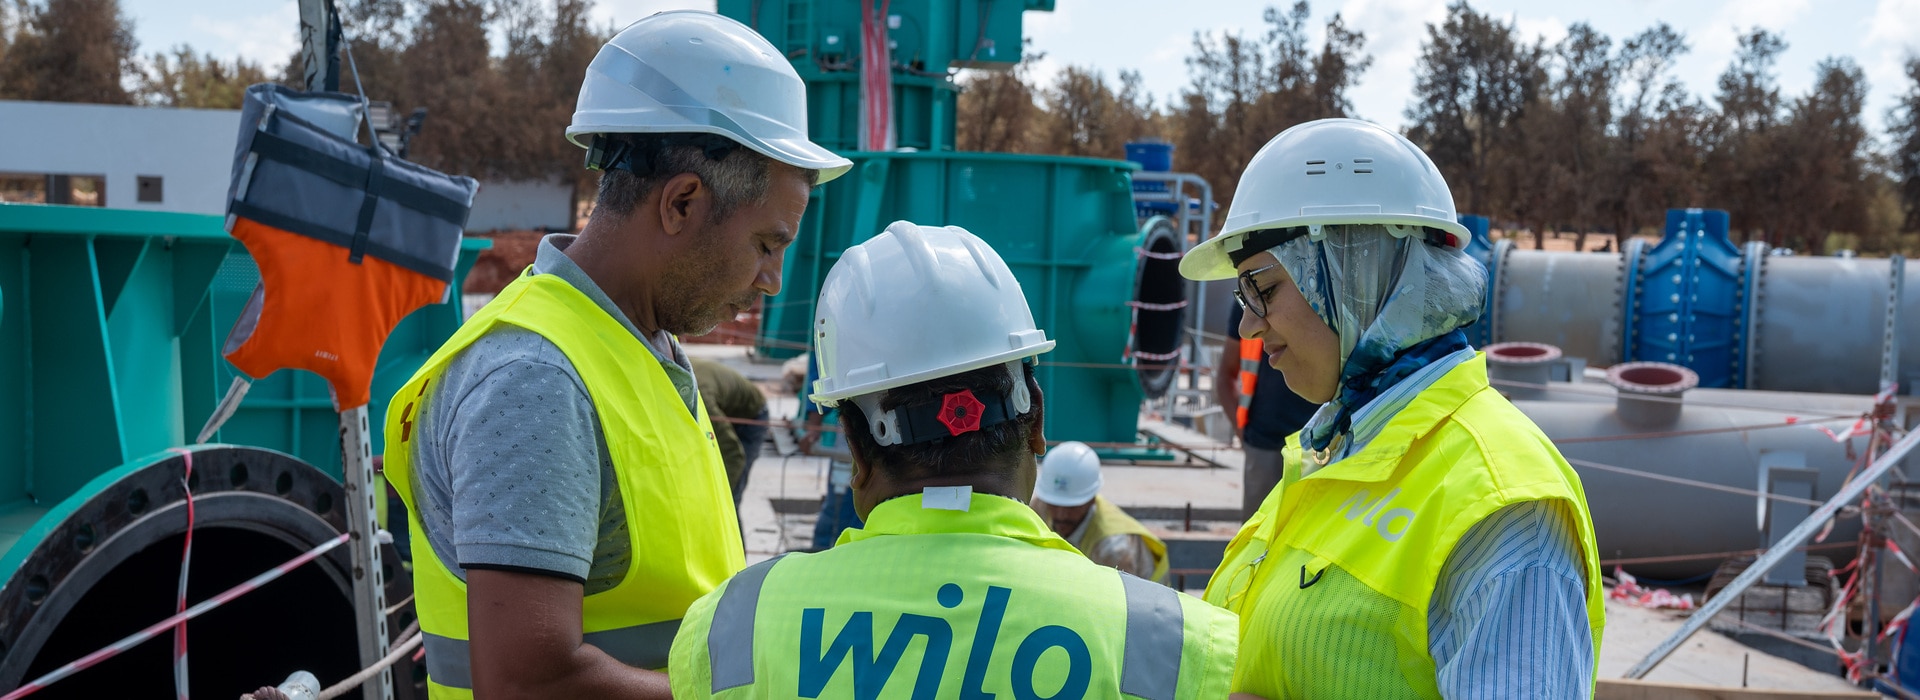 Mitarbeitende im Sebou-Projekt, Wilo-Vertical Turbine Pump